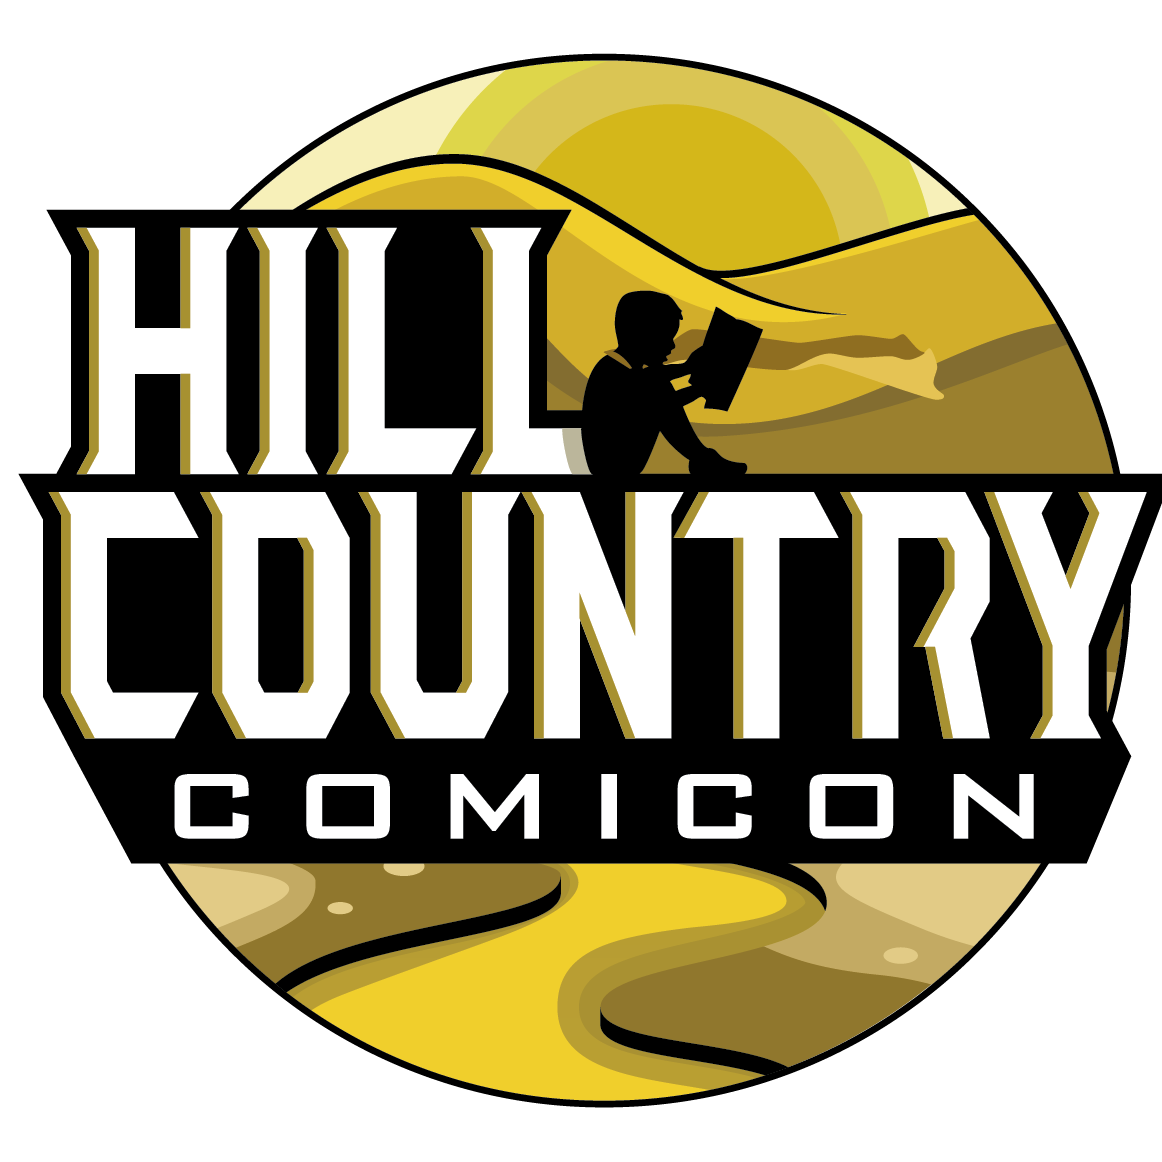 Hill Country Comicon